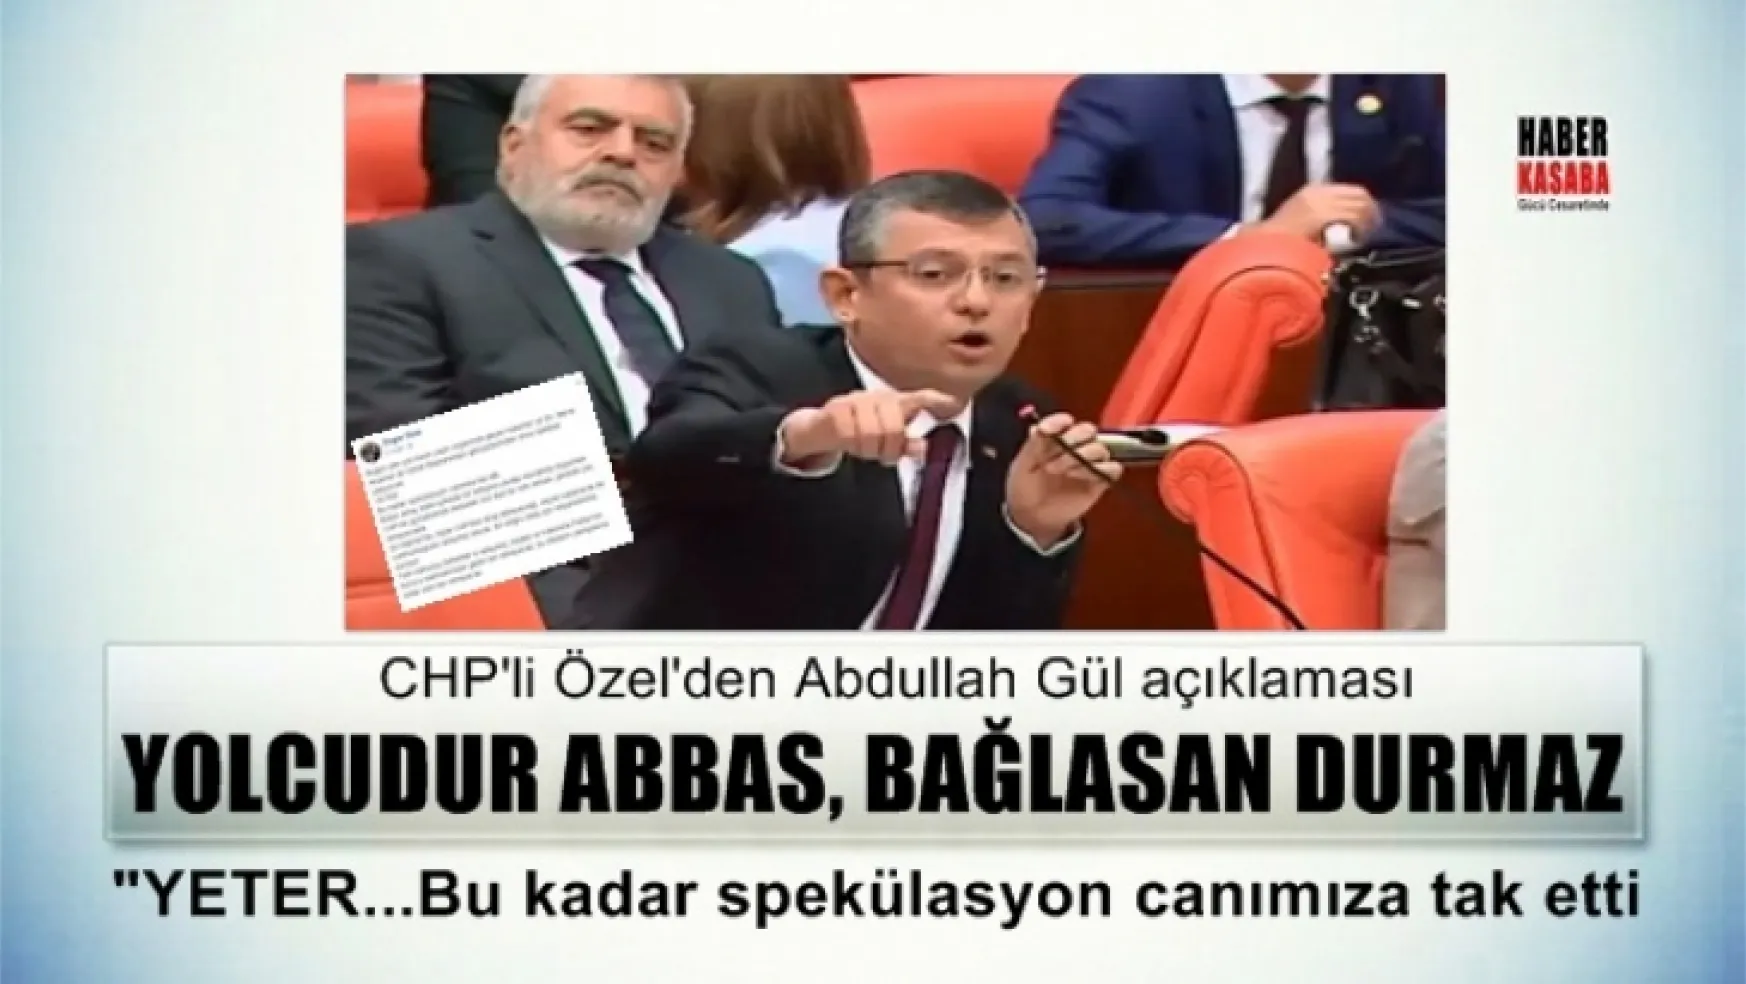 CHP'li Özgür Özel'den Abdullah Gül açıklaması